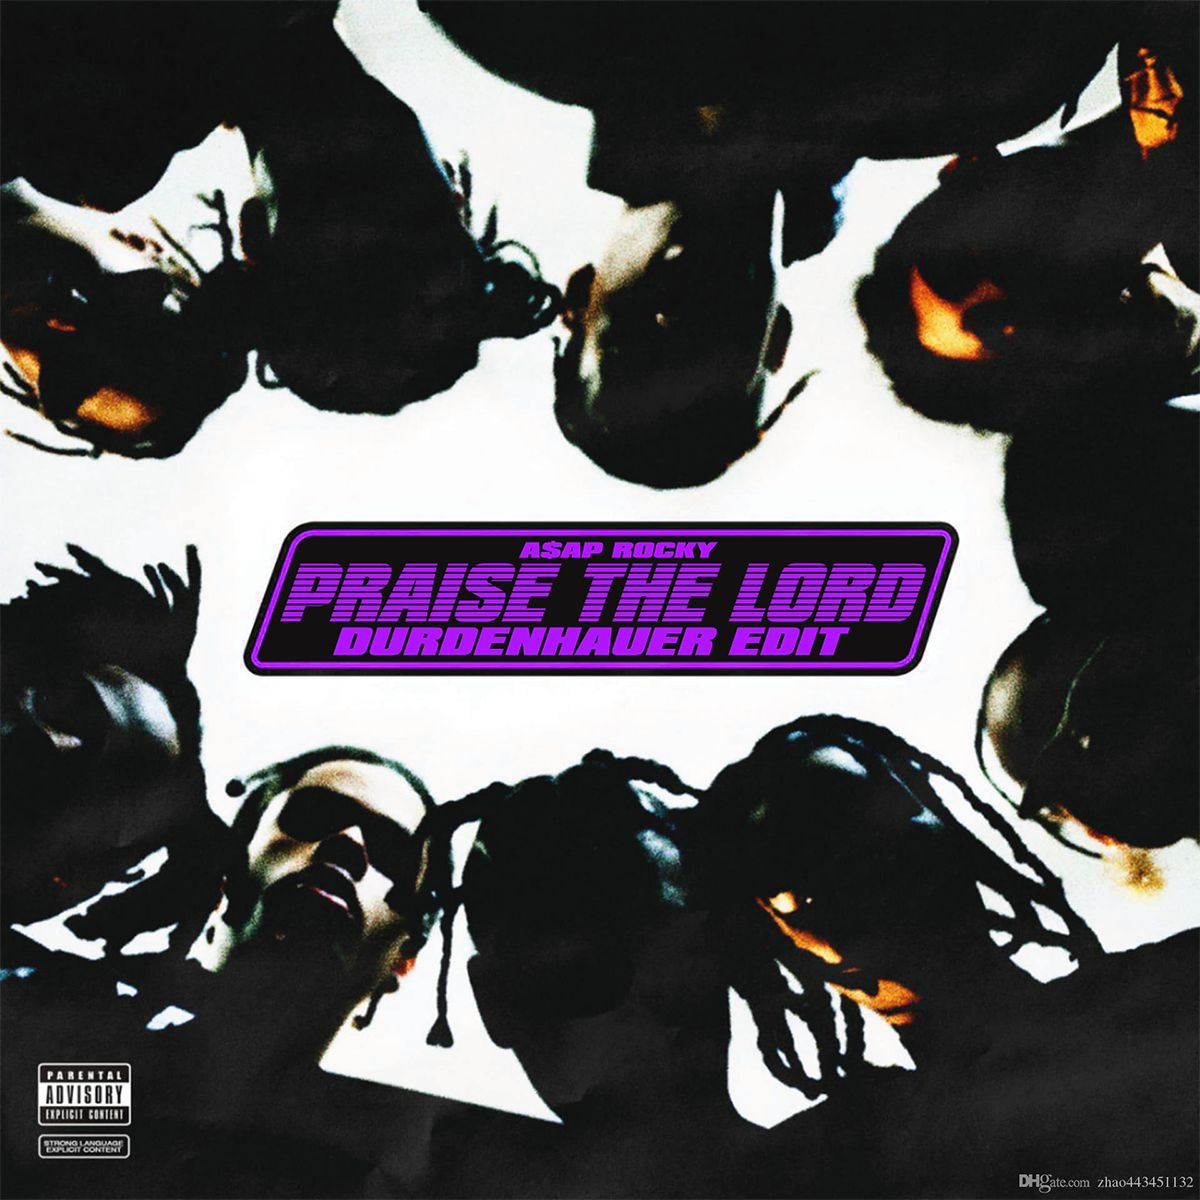 डाउनलोड करा A$AP ROCKY - Praise the Lord (DURDENHAUER Edit) [FREE DOWNLOAD]